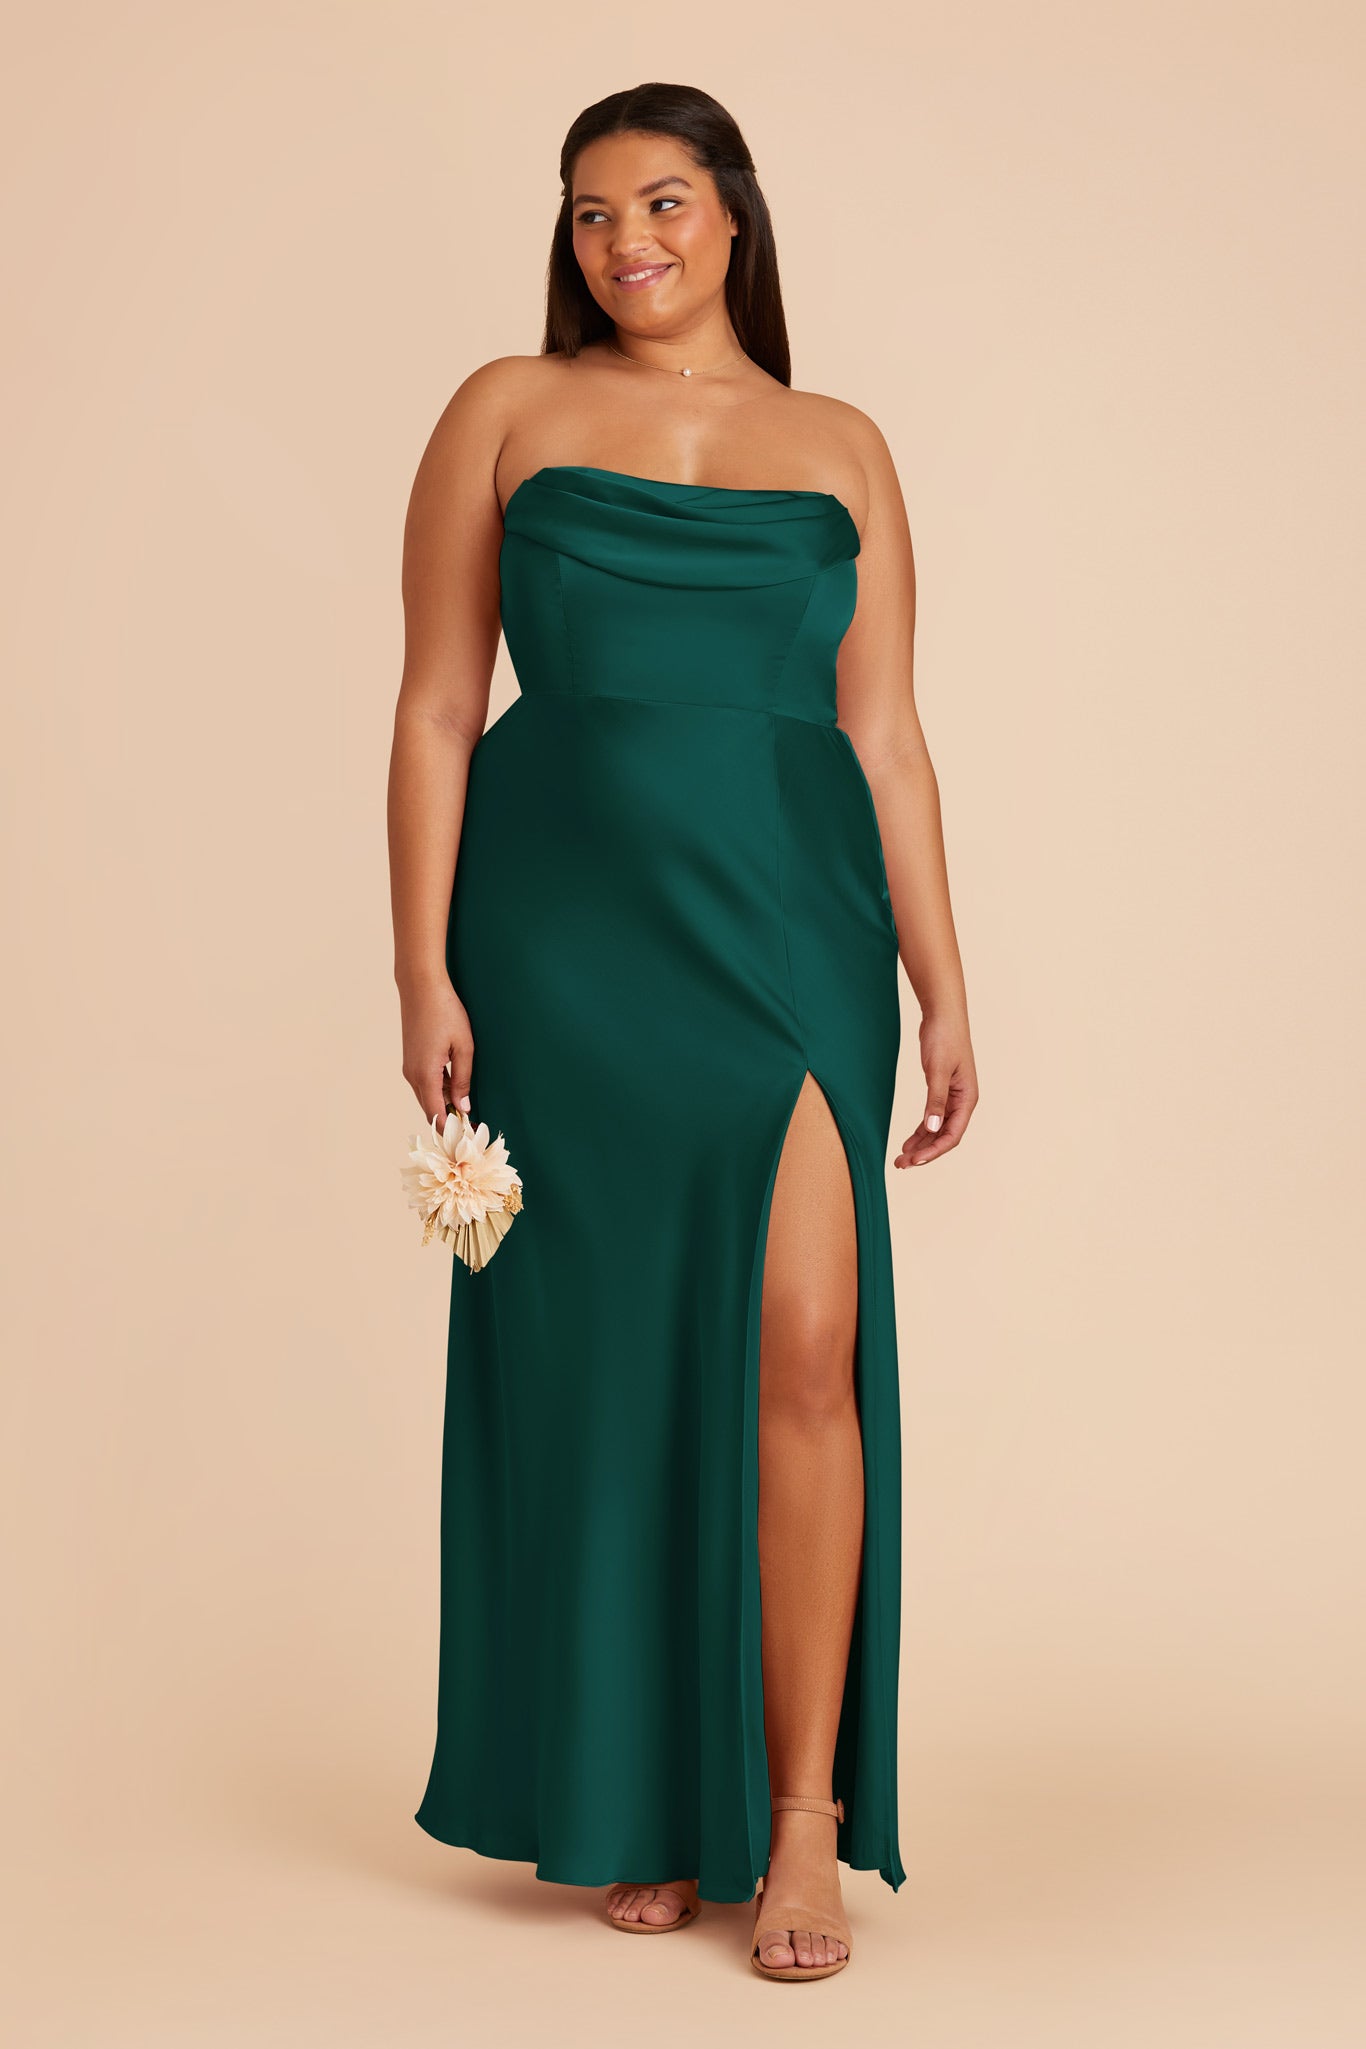 Emerald Mia Matte Satin Dress by Birdy Grey